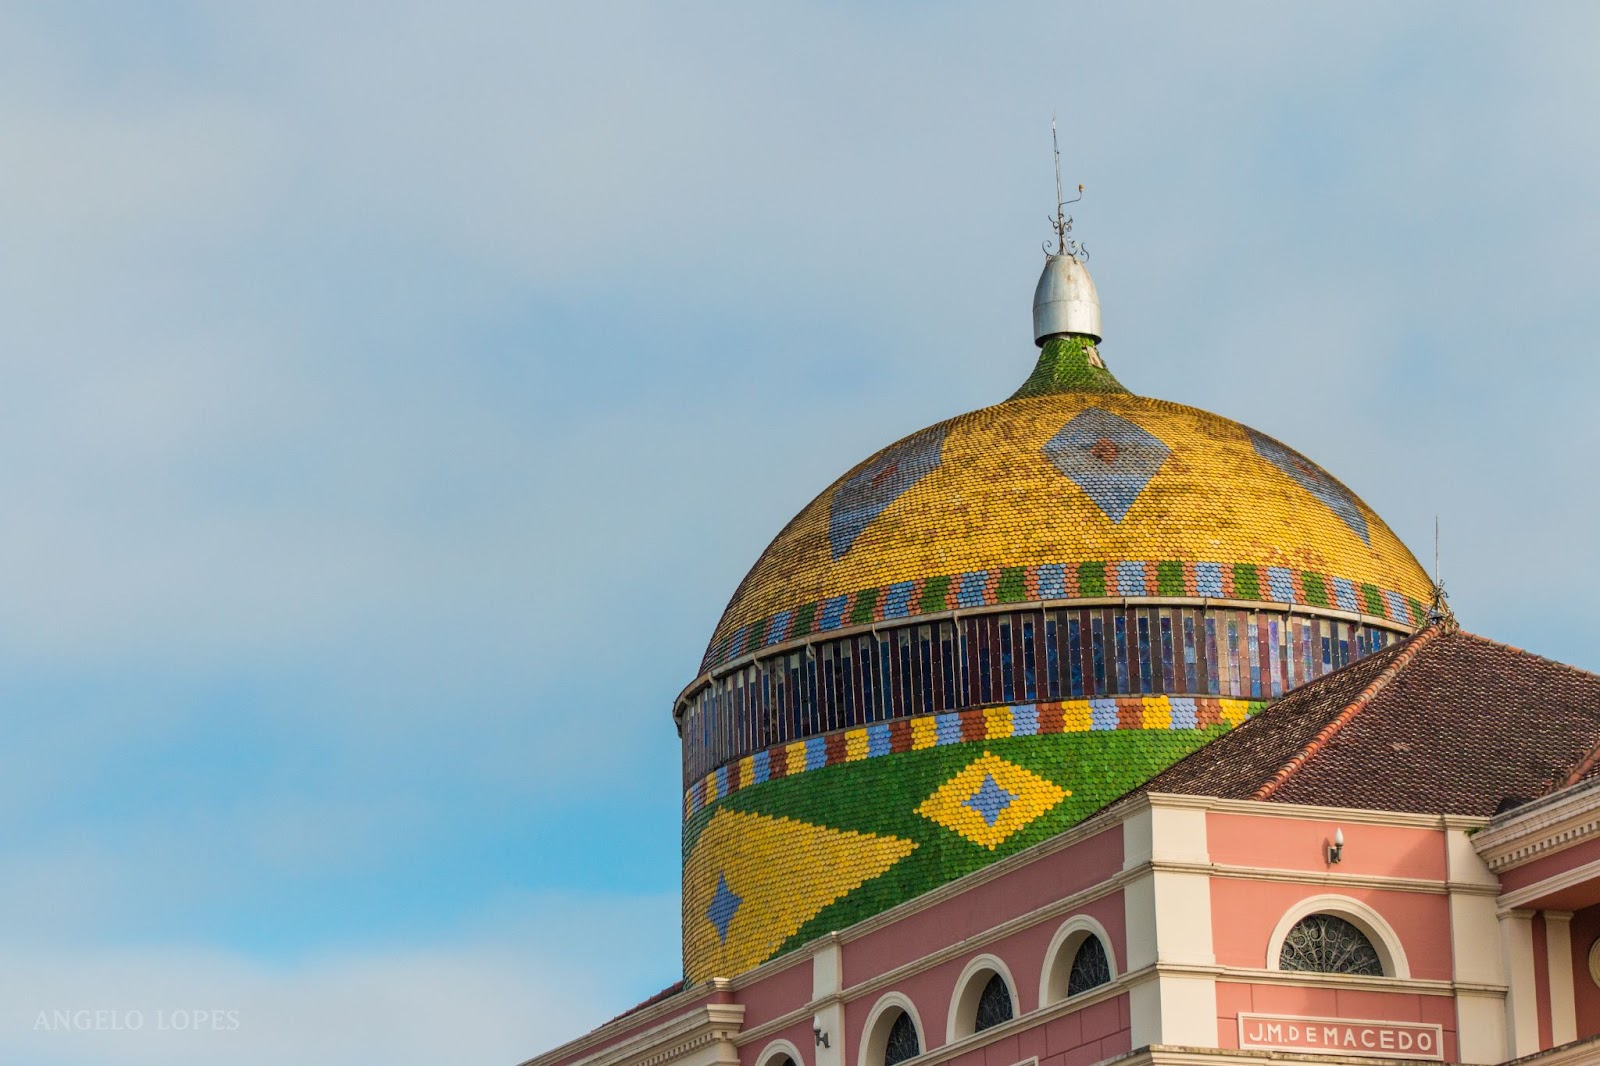 Cúpula do Teatro Amazonas. A estrutura redonda é adornada por ladrilhos cerâmicos em cores vibrantes, como amarelo, azul e verde. O formato do mosaico lembra a bandeira do Brasil.